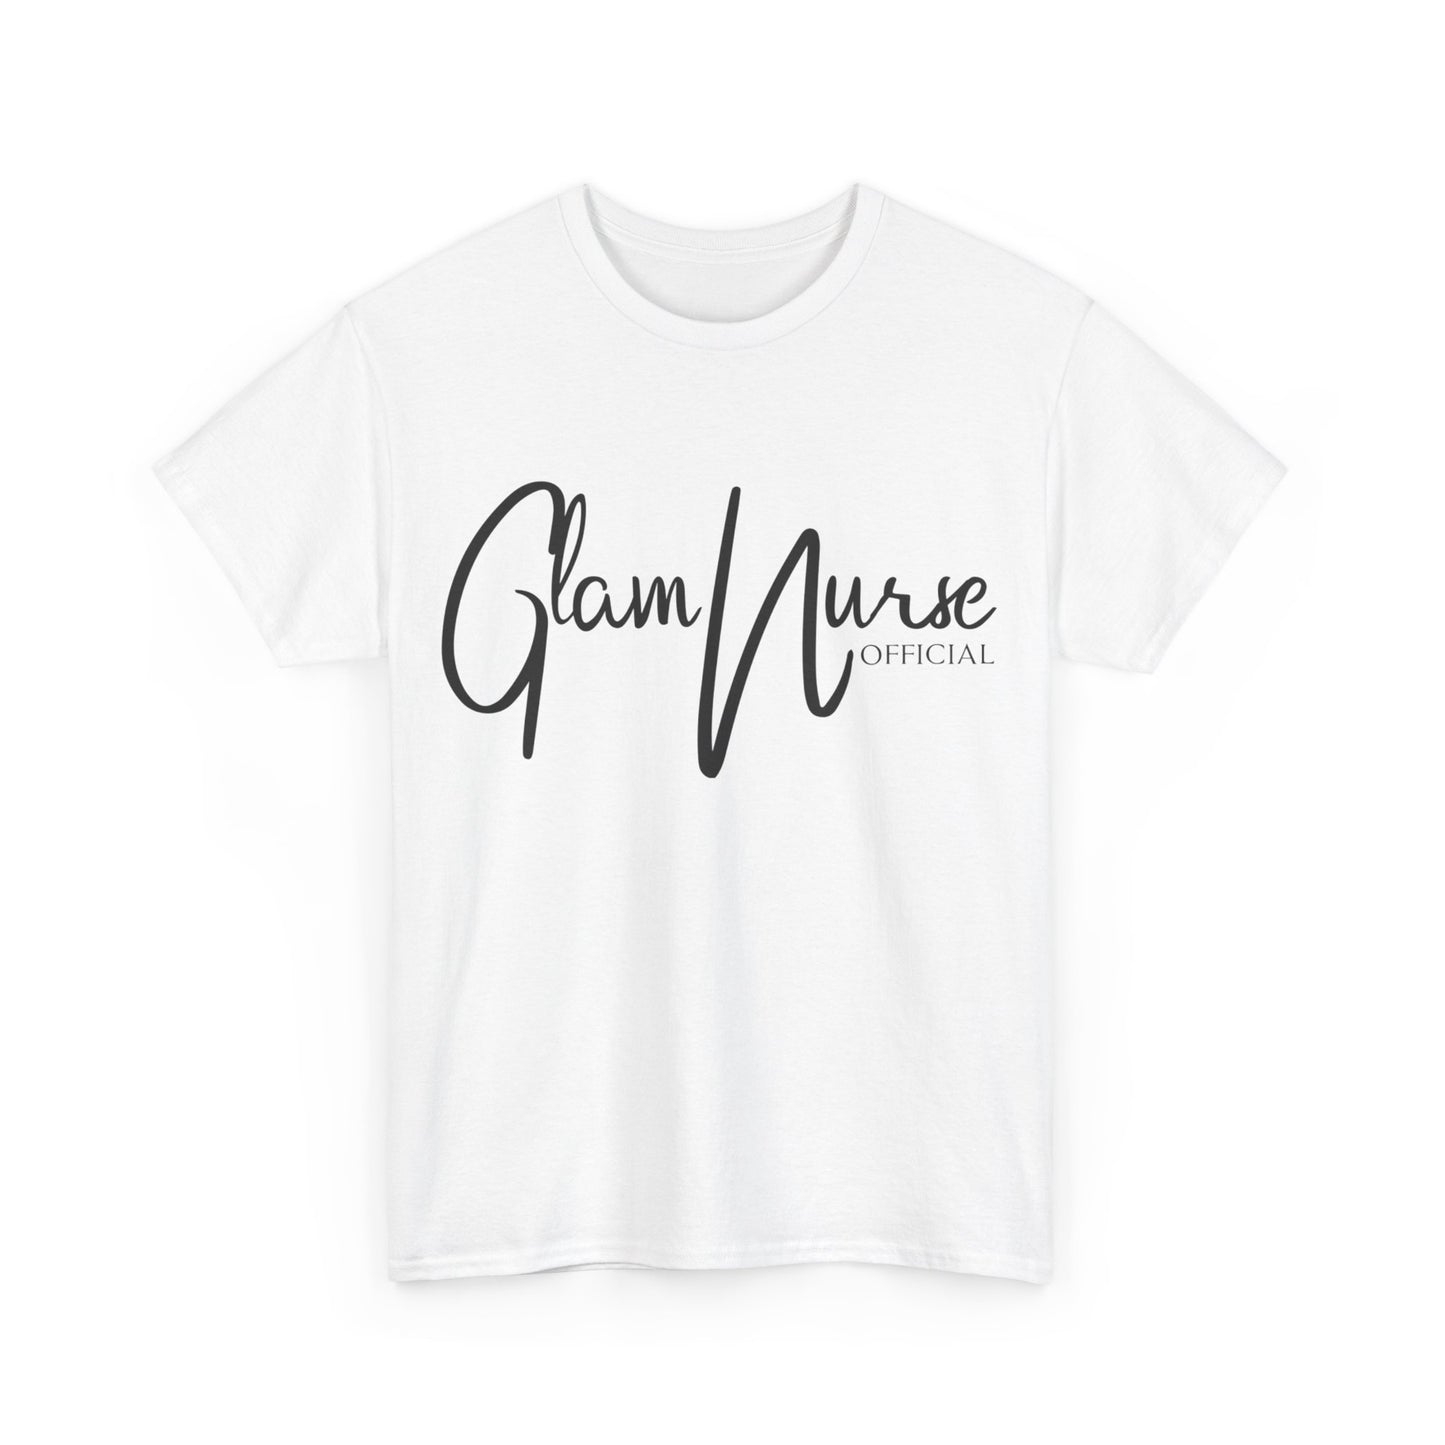 Glamnurse official T-shirt